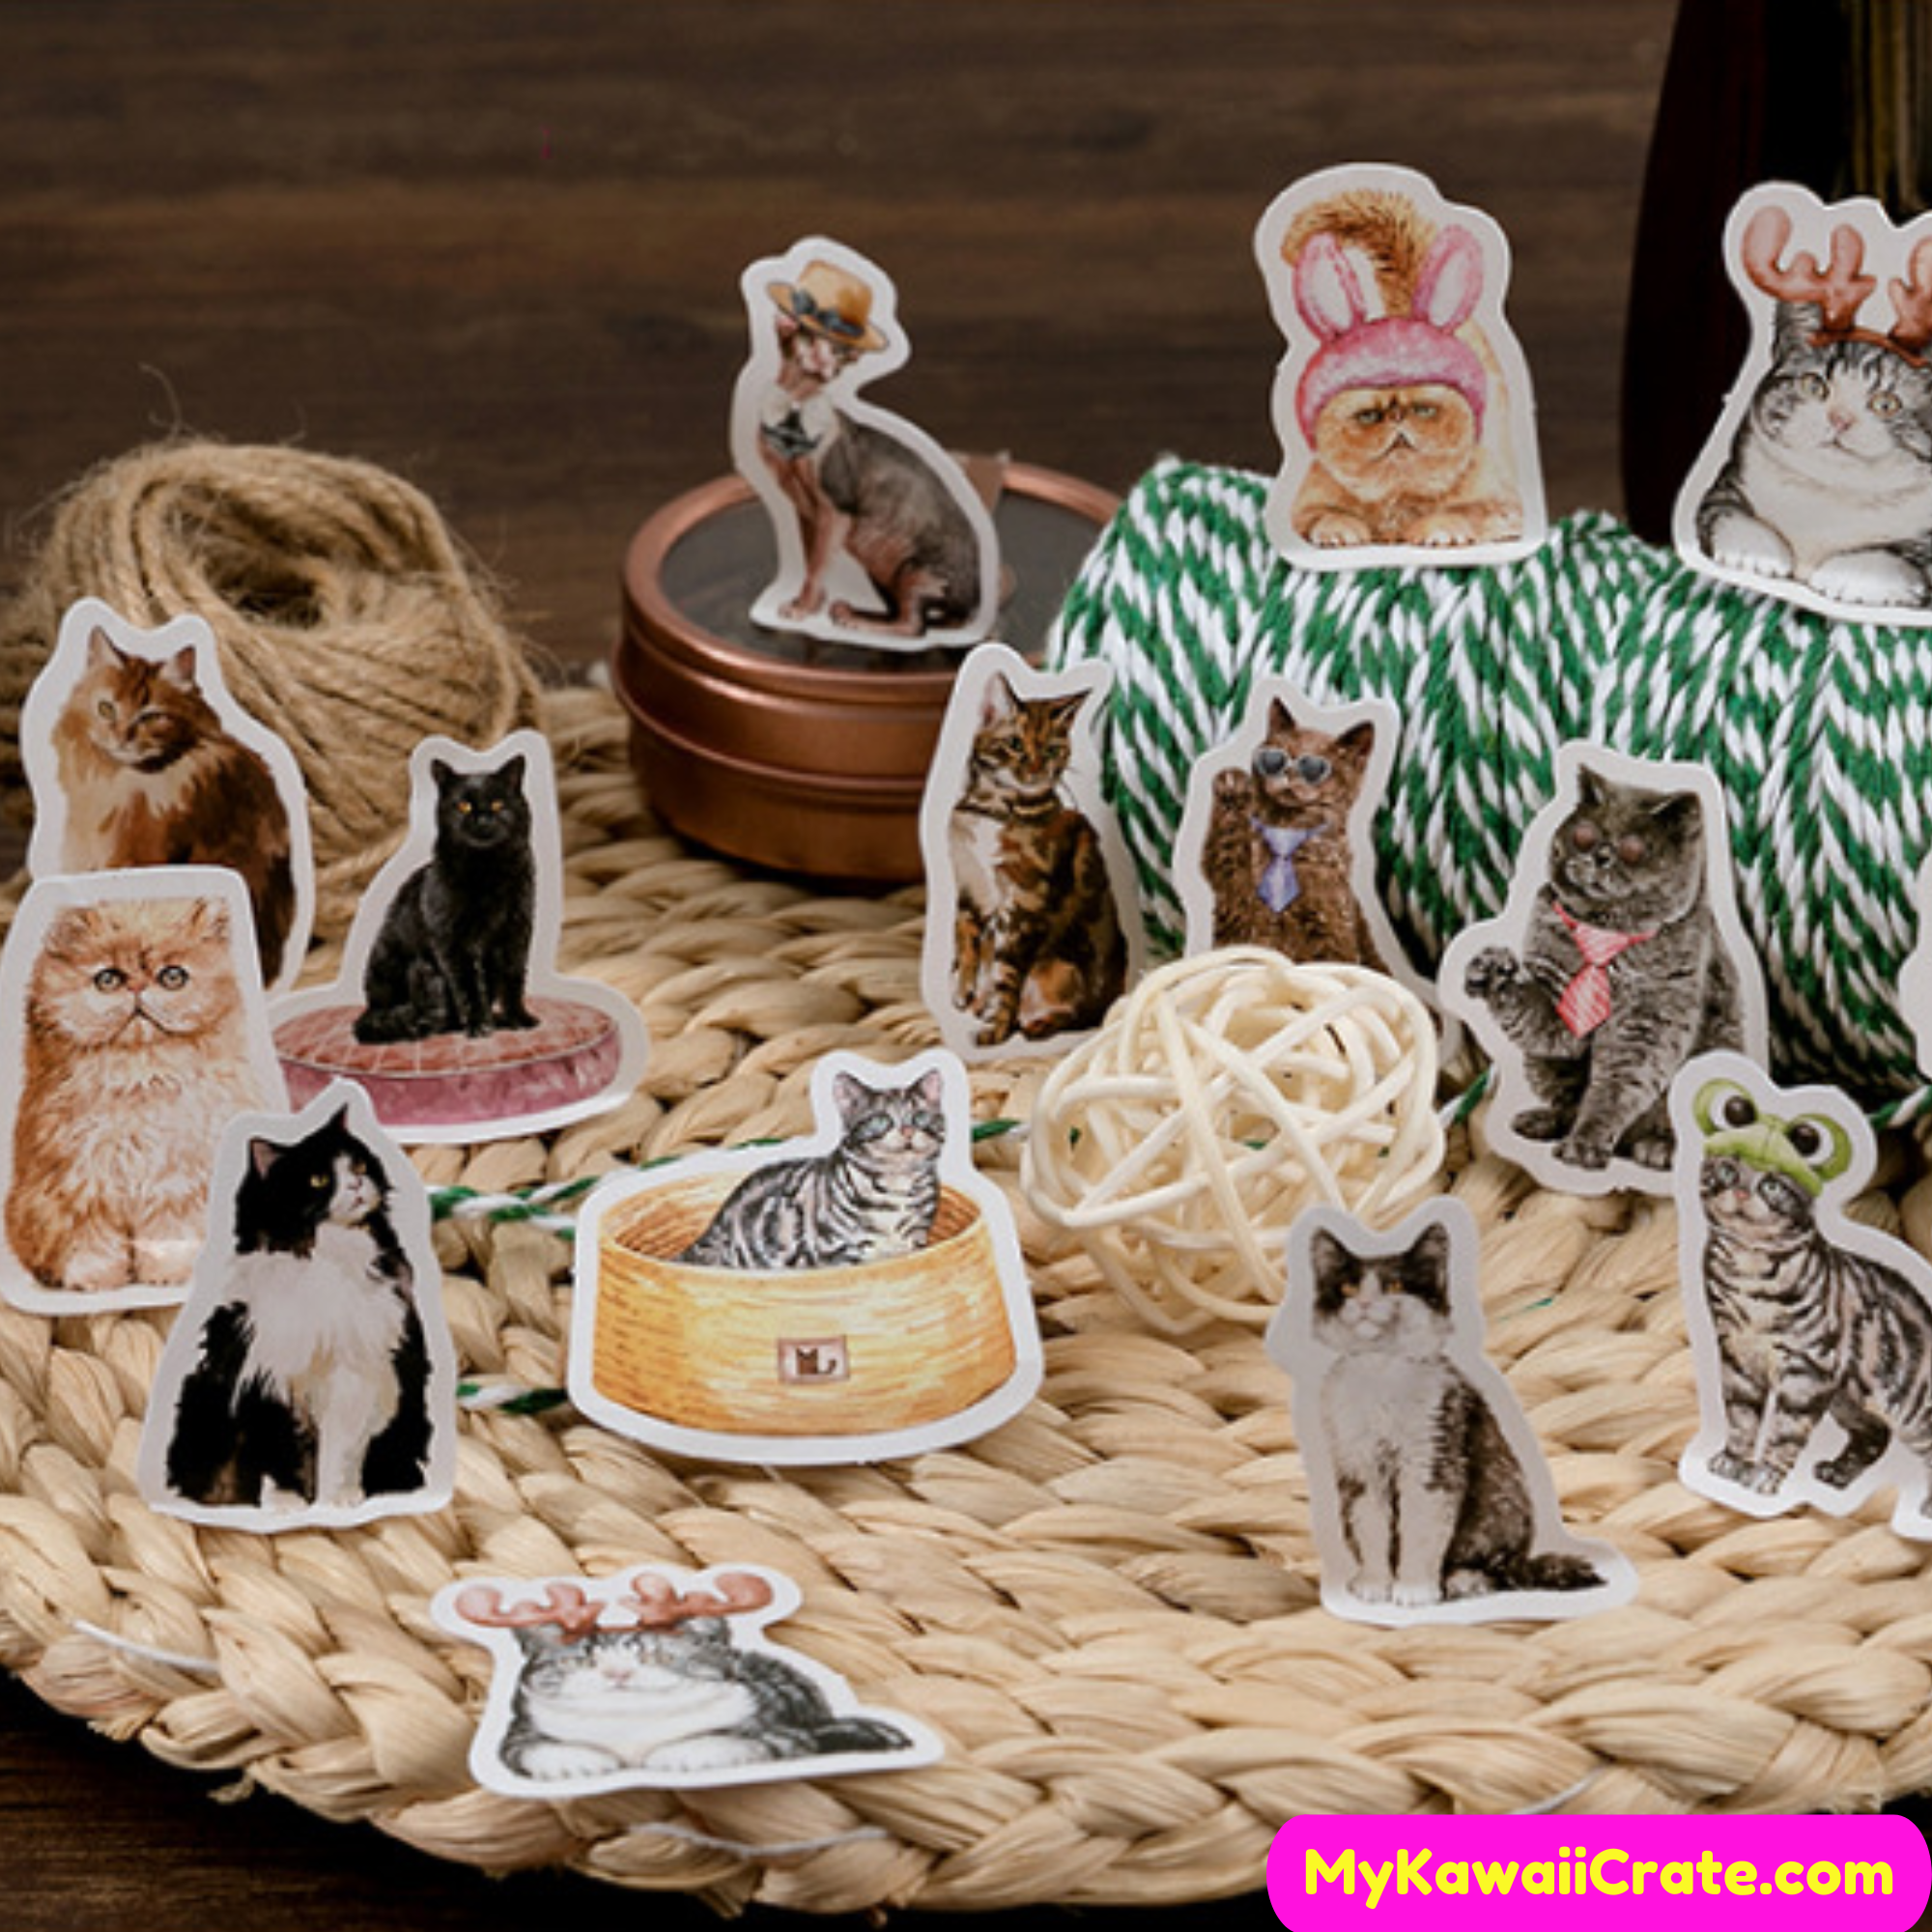 45pcs of Playful Cats Decorative Stickers - Kuru Store